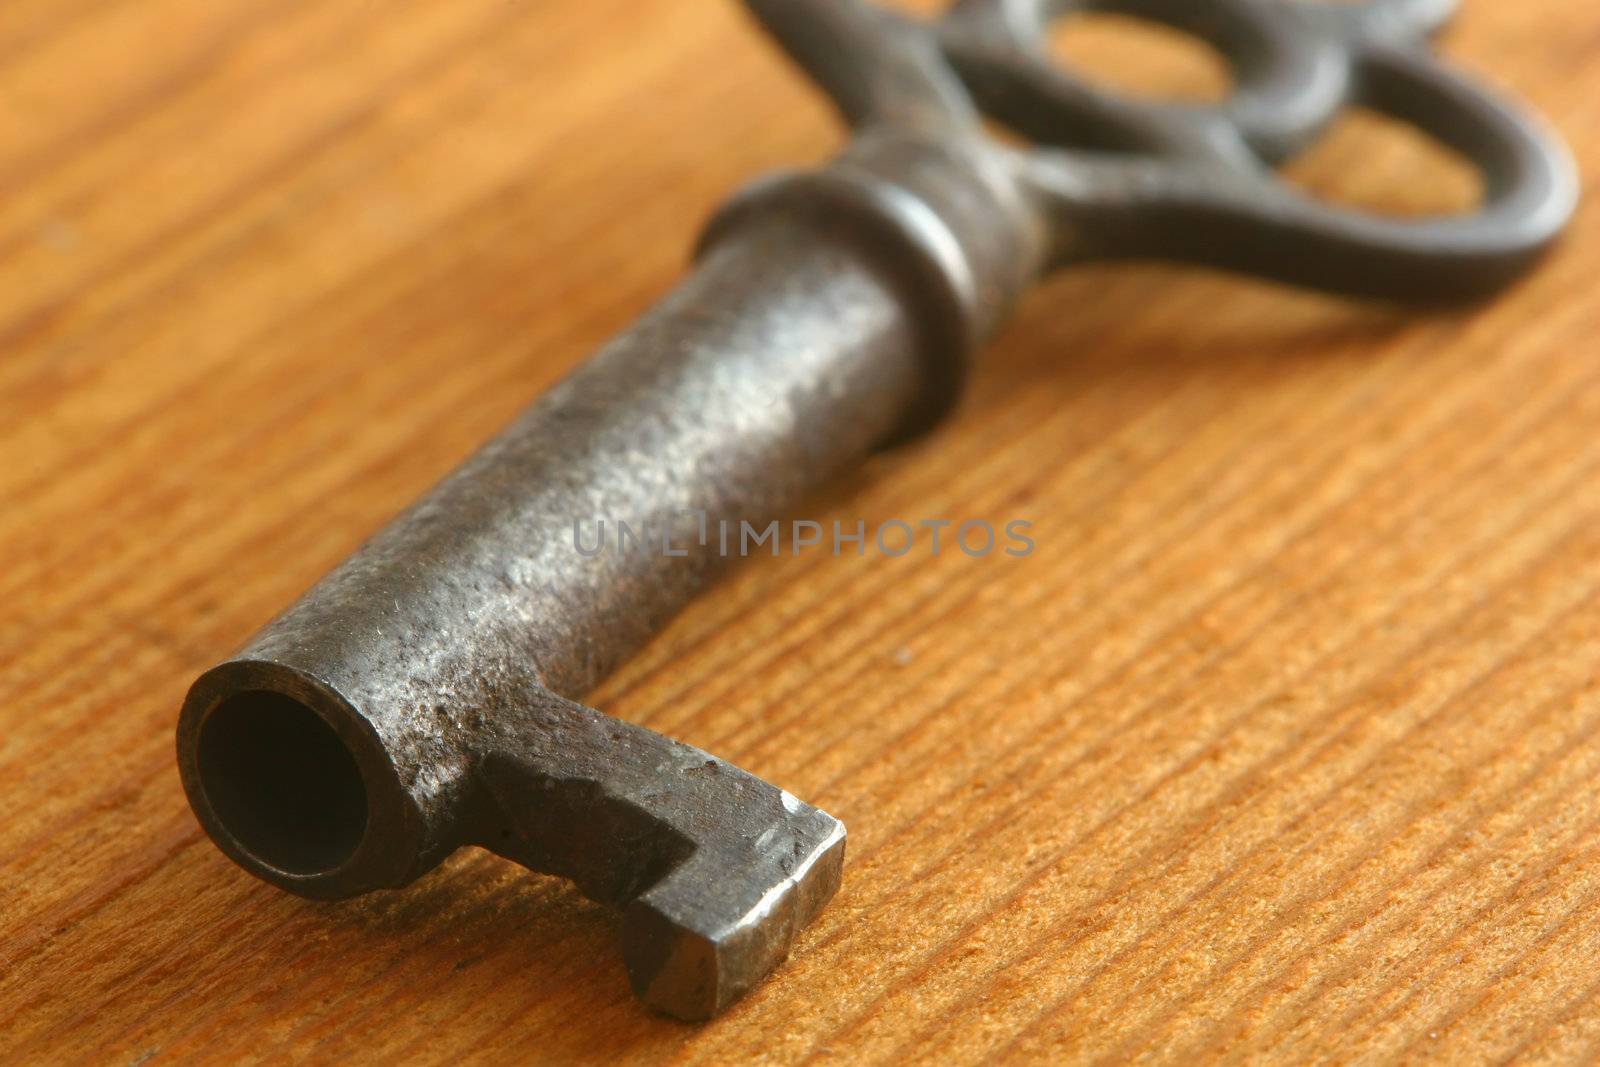 Old key on wood background.